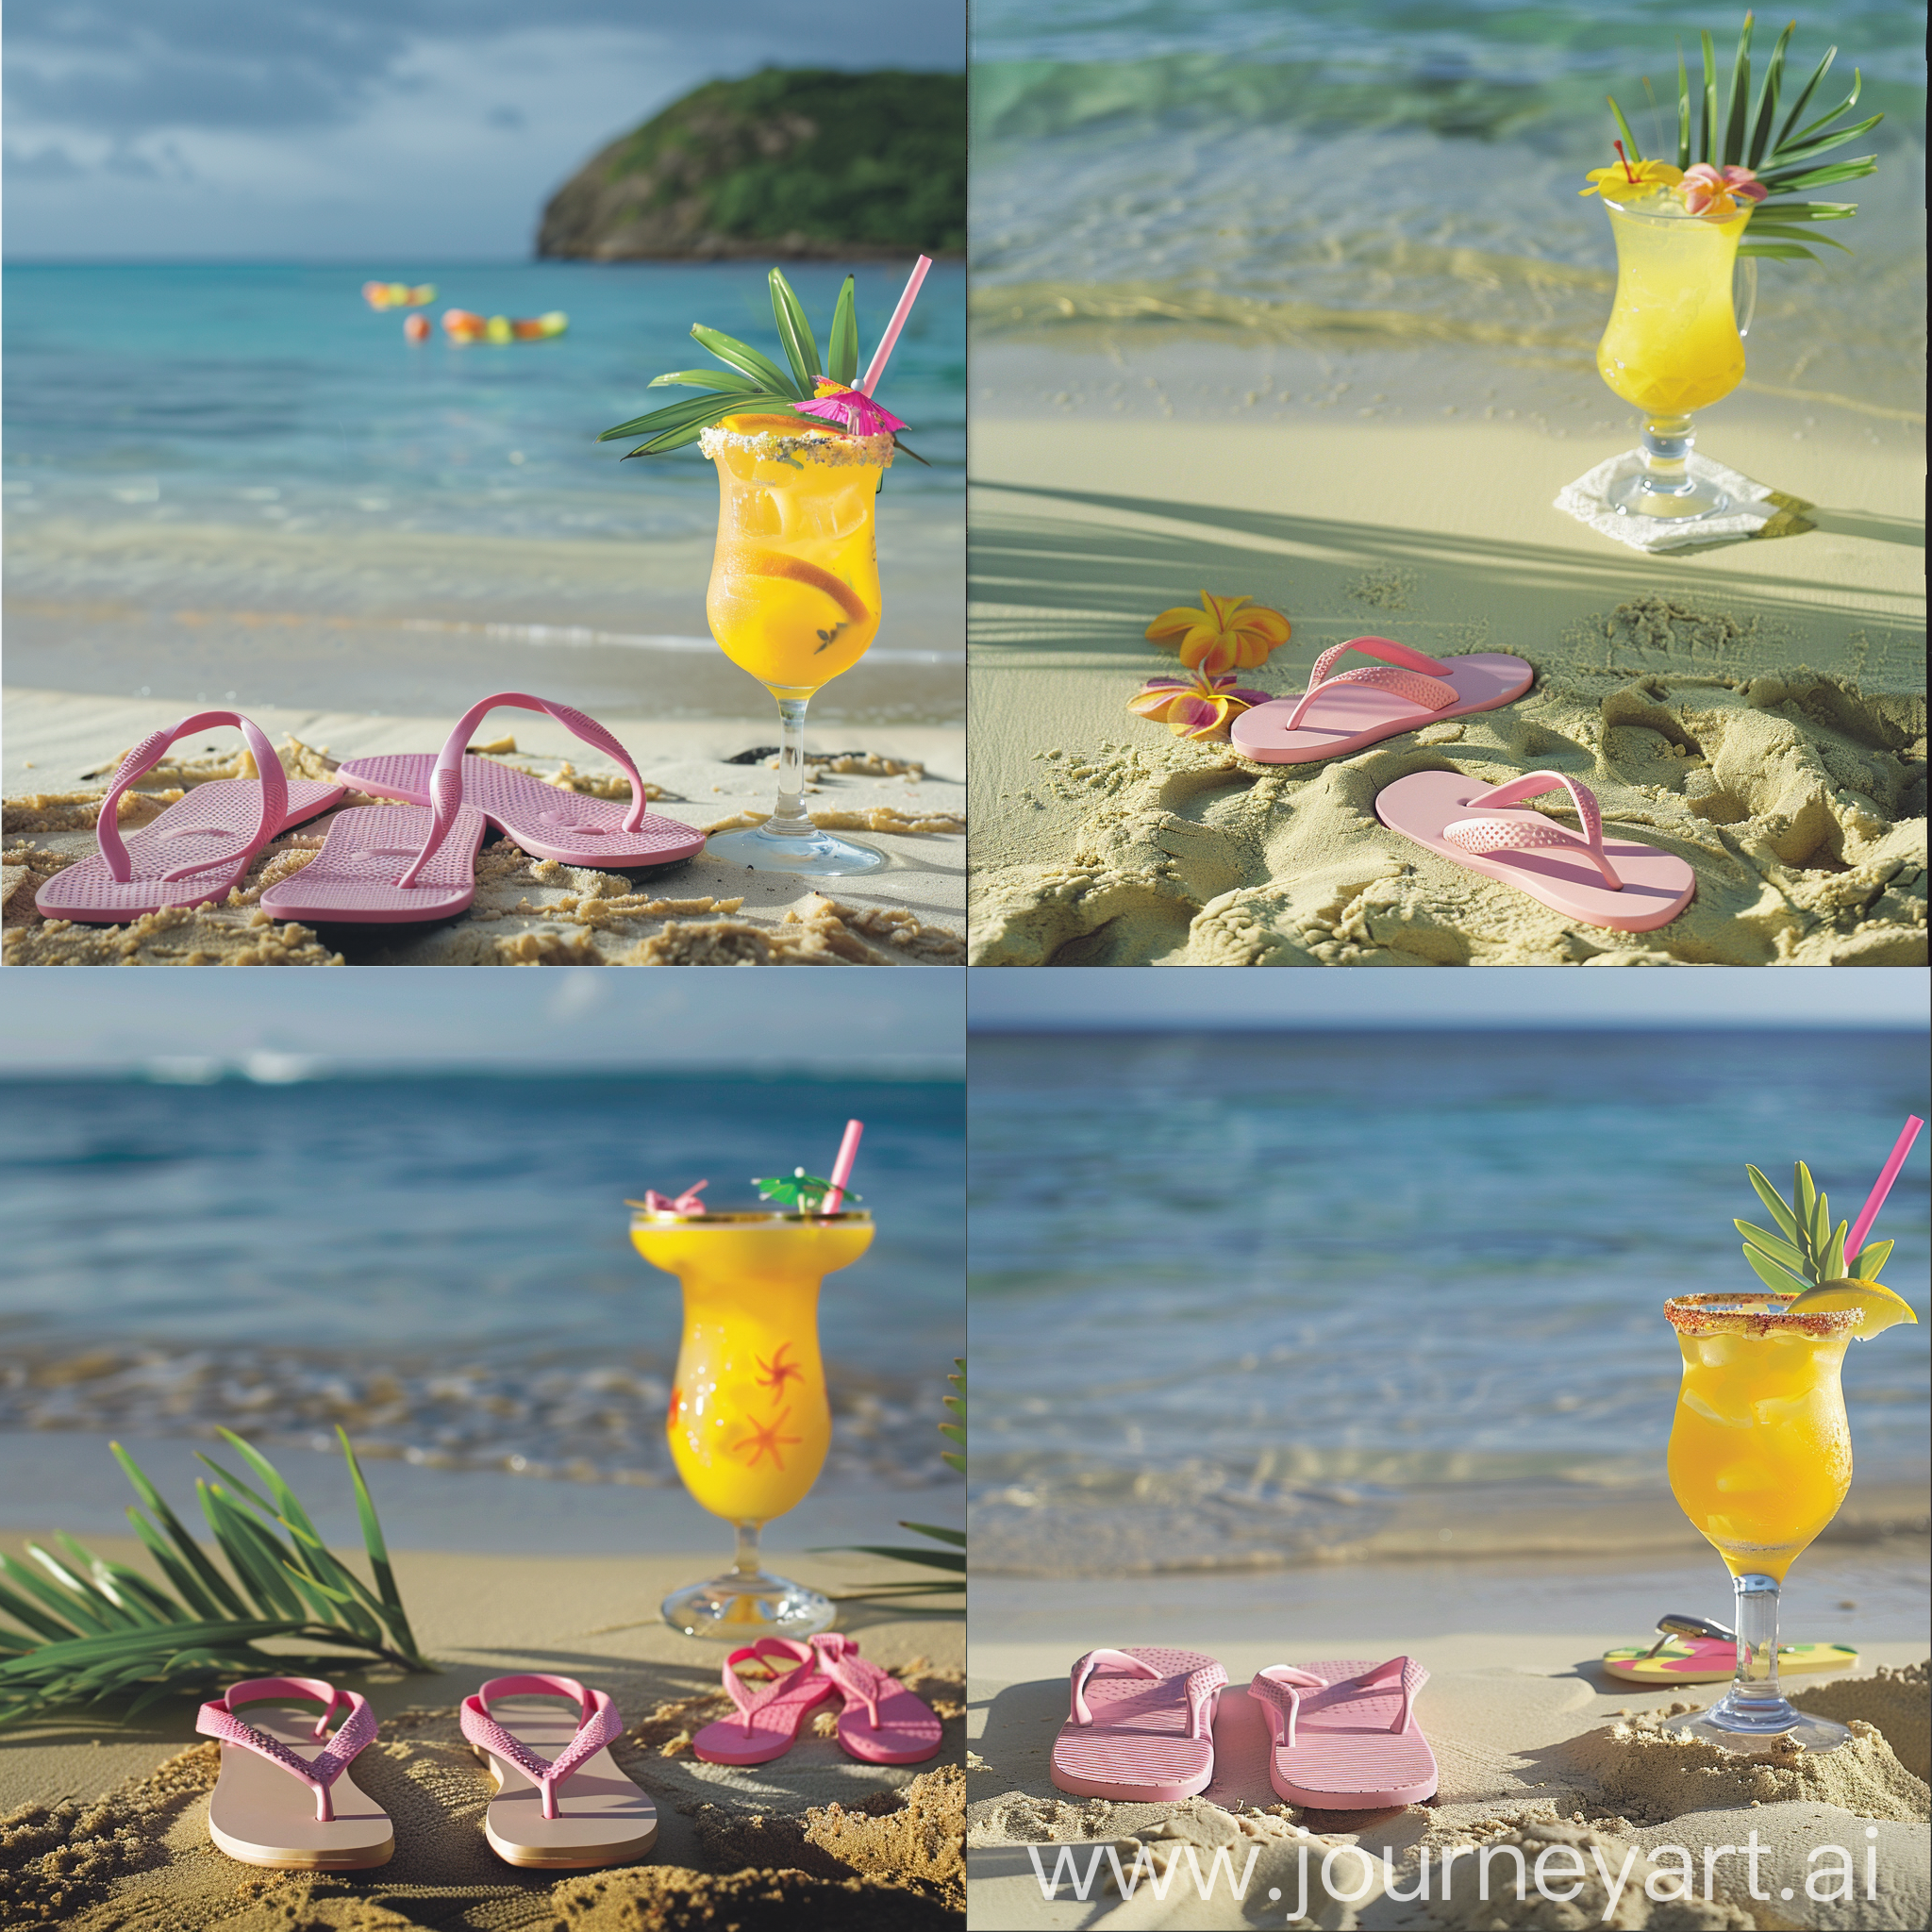 creame la imagen deuna playa del caribe y en la arena unas chanclas color rosa junto a un coctel tropical color amarillo
